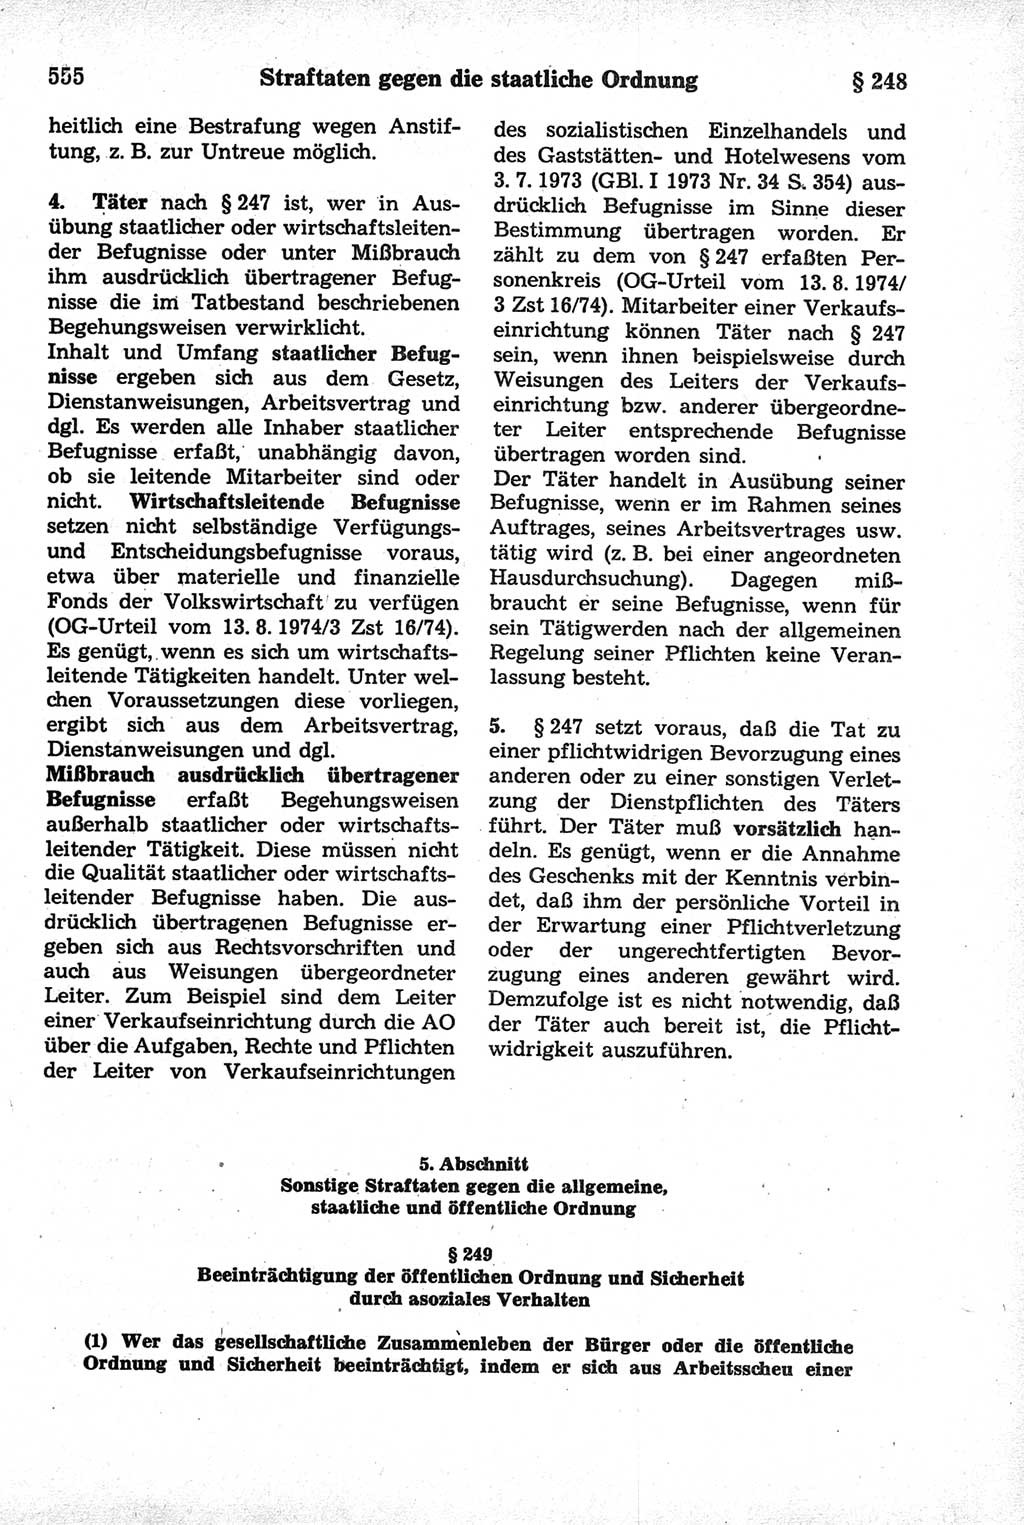 Strafrecht der Deutschen Demokratischen Republik (DDR), Kommentar zum Strafgesetzbuch (StGB) 1981, Seite 555 (Strafr. DDR Komm. StGB 1981, S. 555)